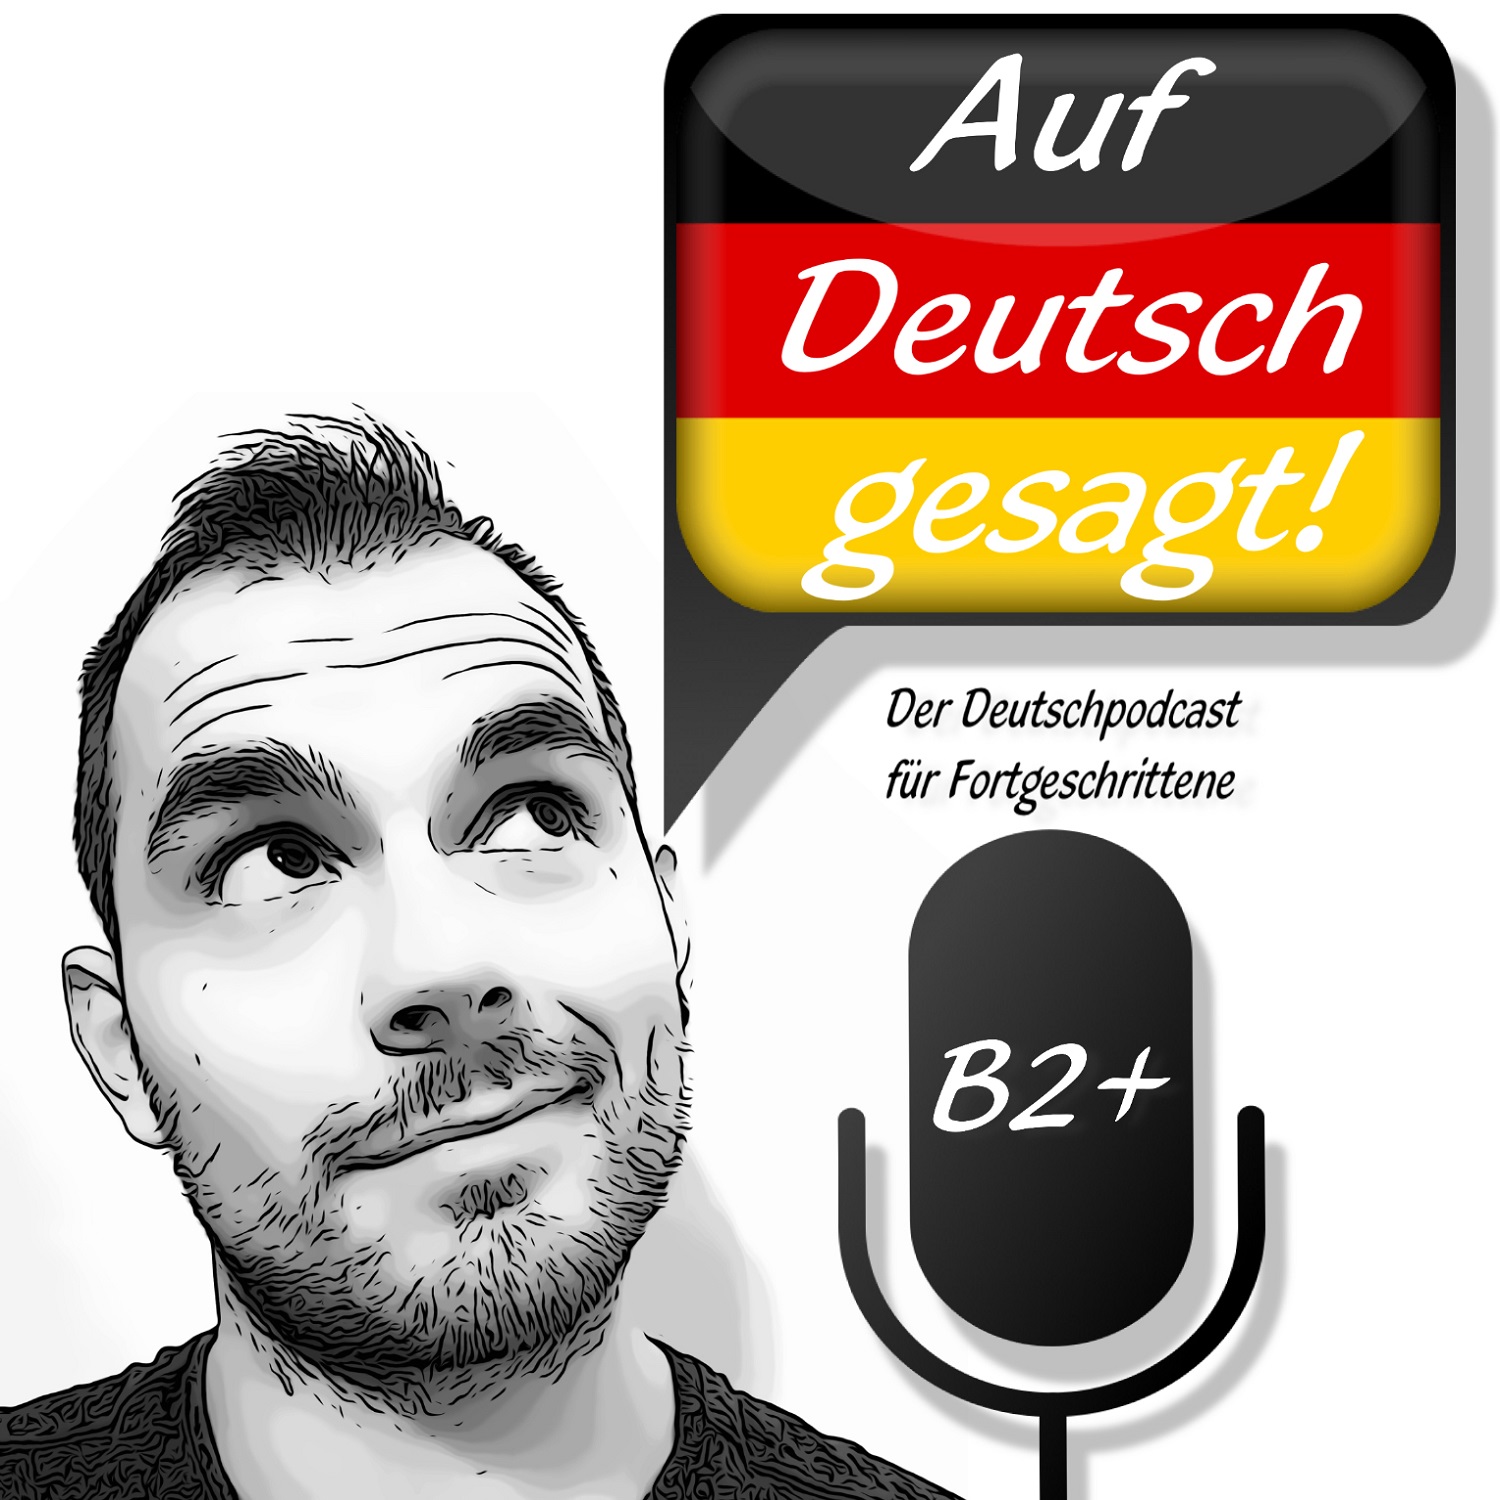 Auf Deutsch gesagt! podcast show image